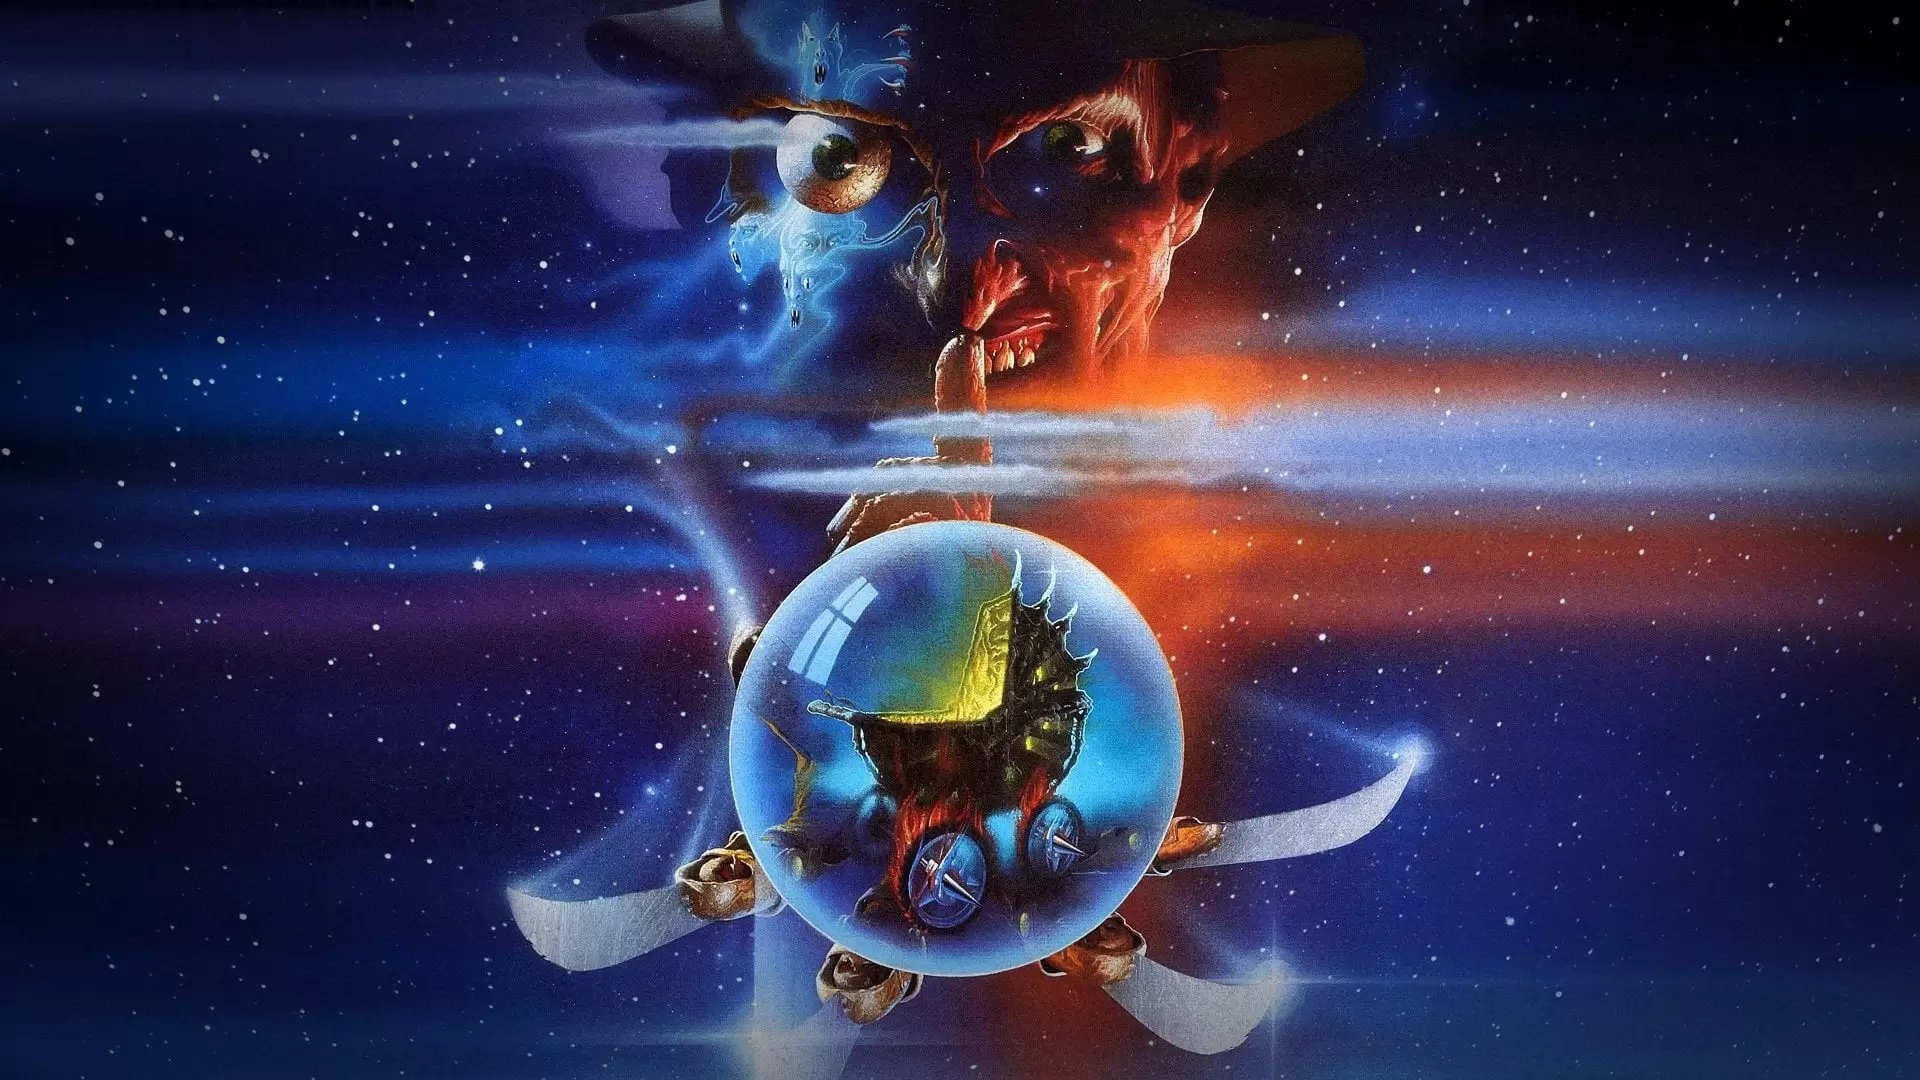 دانلود فیلم A Nightmare on Elm Street 5: The Dream Child 1989 (کابوس در خیابان الم ۵: کودک رؤیایی) با زیرنویس فارسی